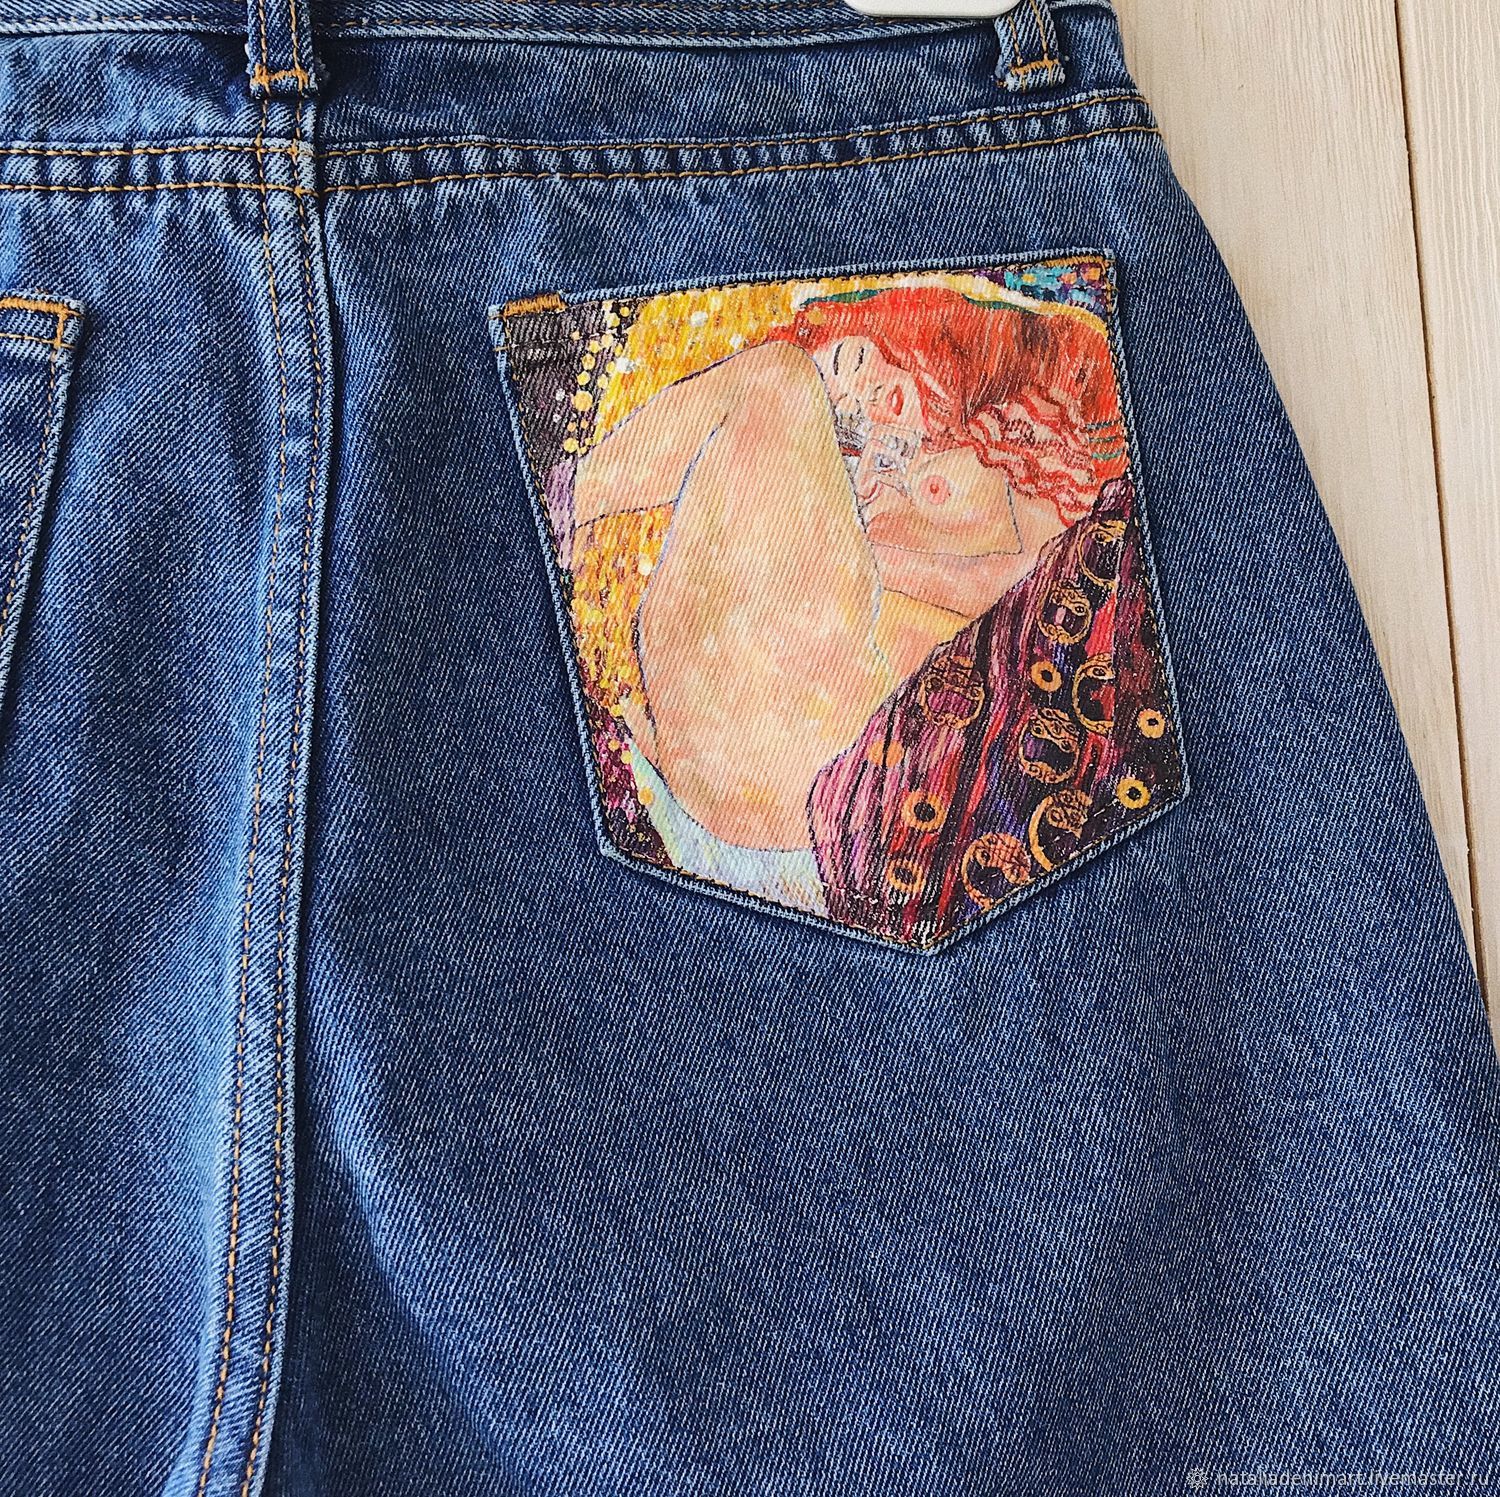 Карман джинсов рисунок. Расписные джинсы. Рисунки на джинсах. Роспись по джинсам. Джинсы Расписанные акрилом.